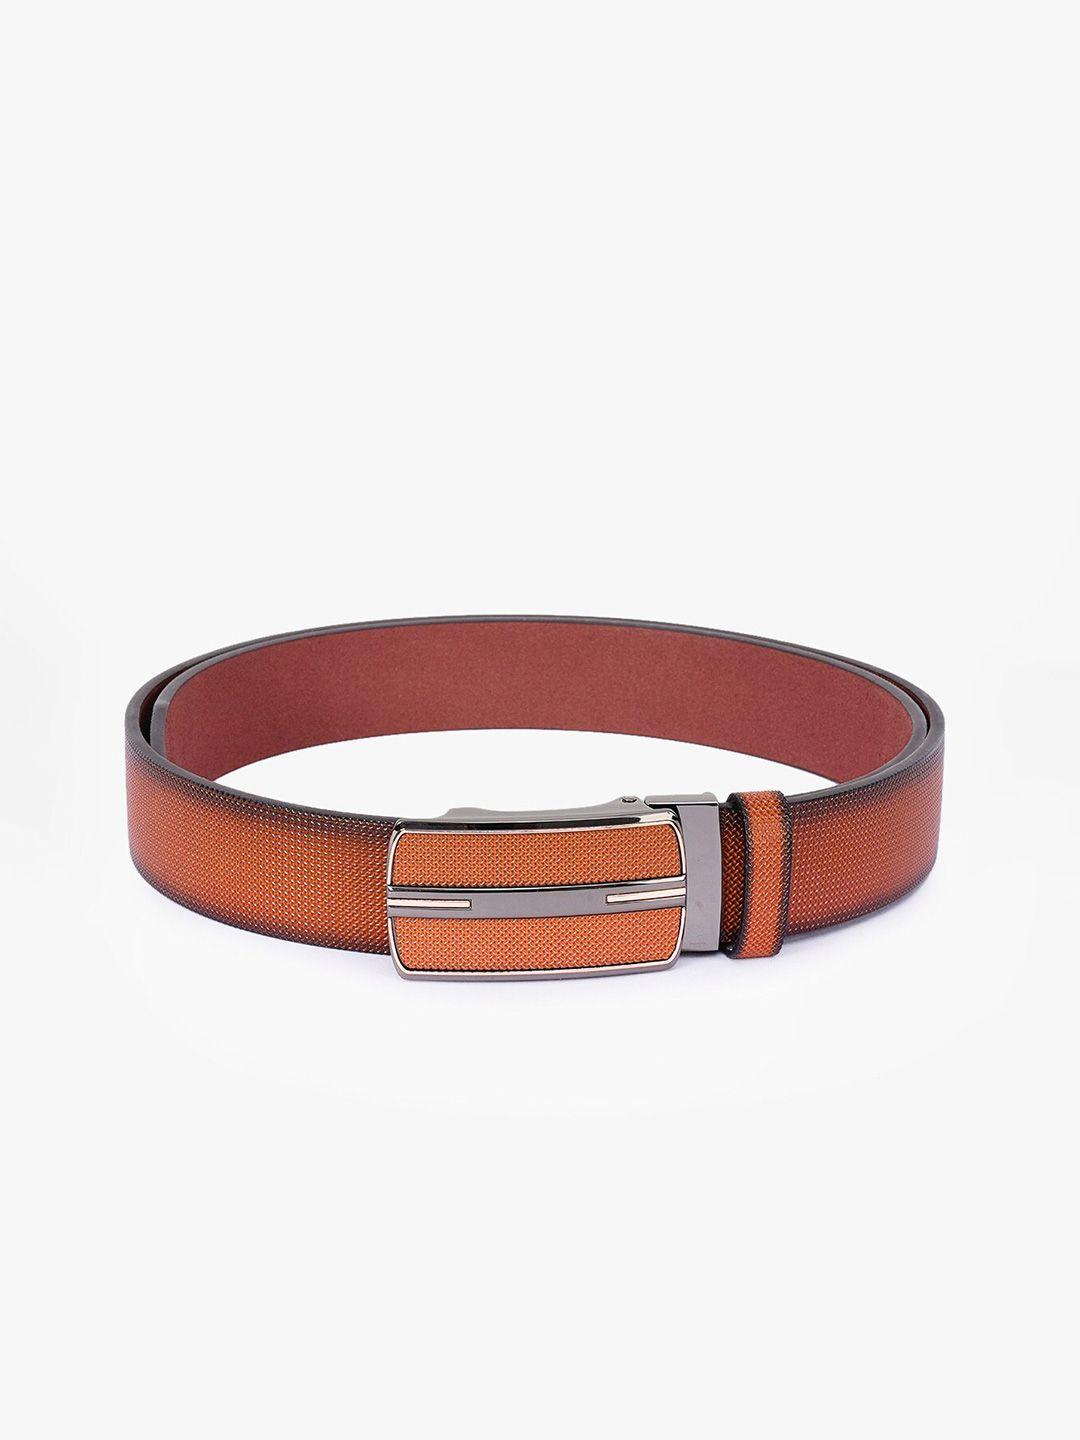 buckleup men tan solid leather belt